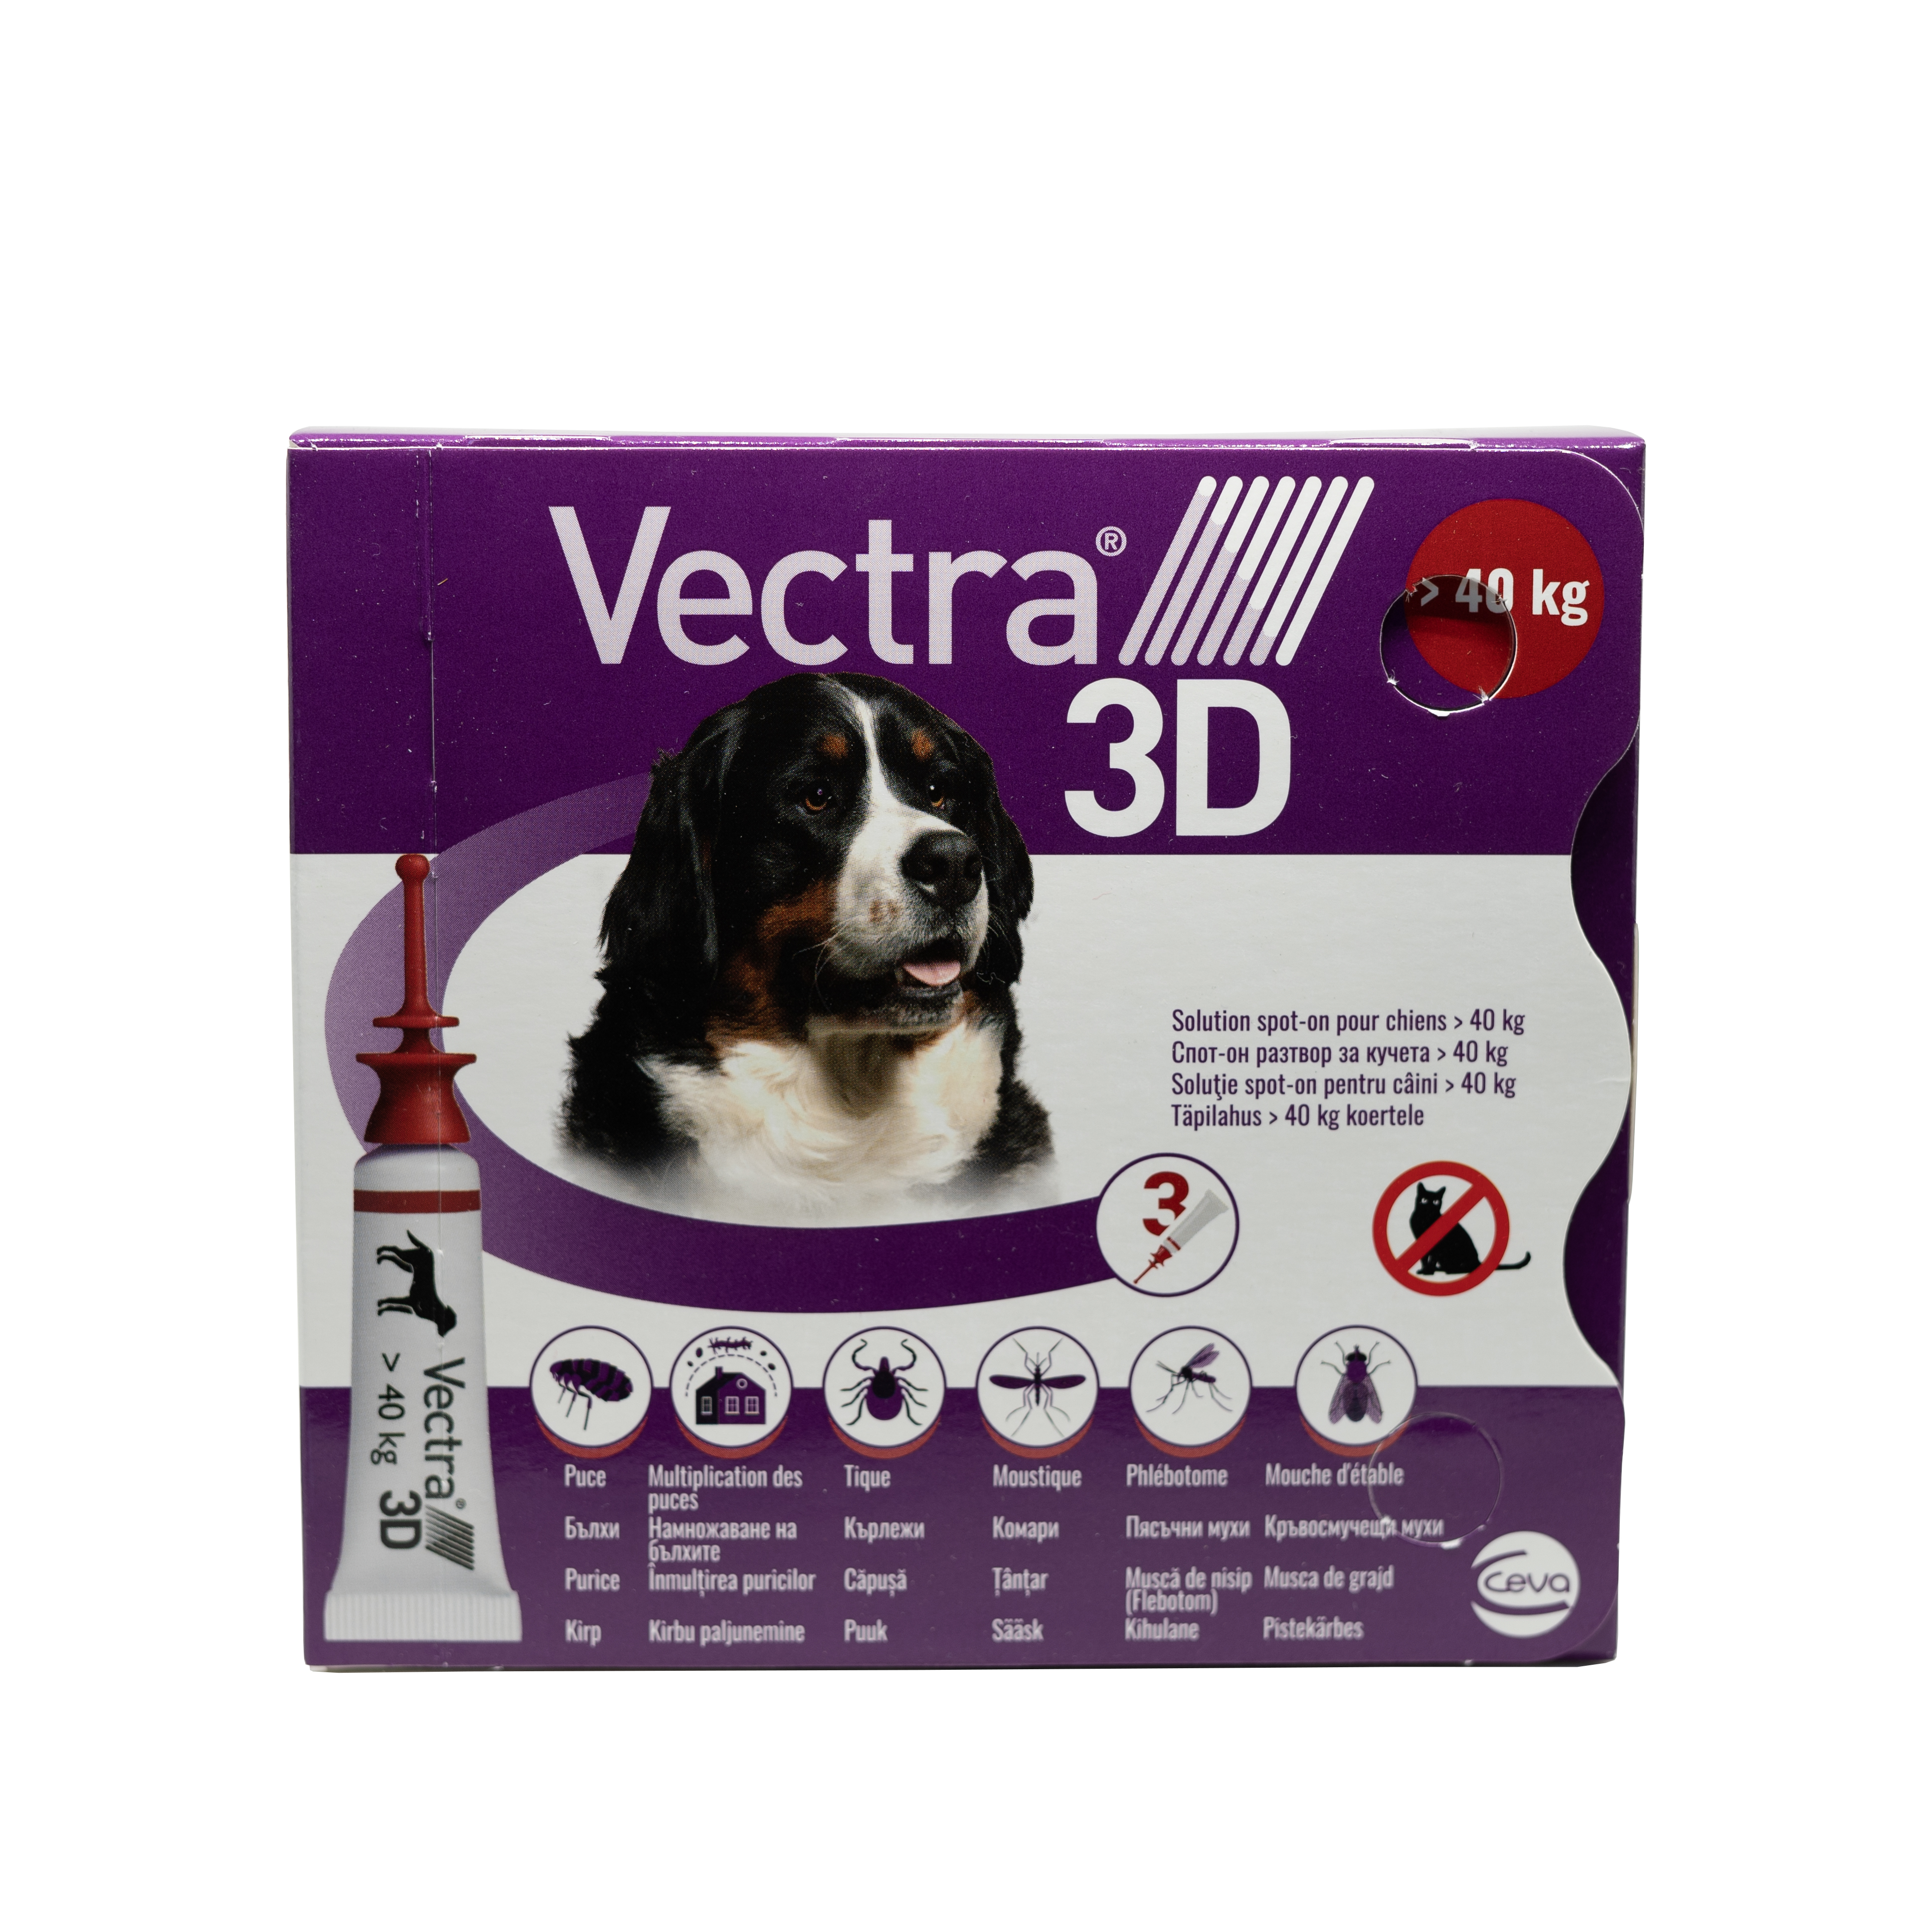 Vectra 3D pentru caini de +40kg 3 pipete antiparazitare Ceva Sante